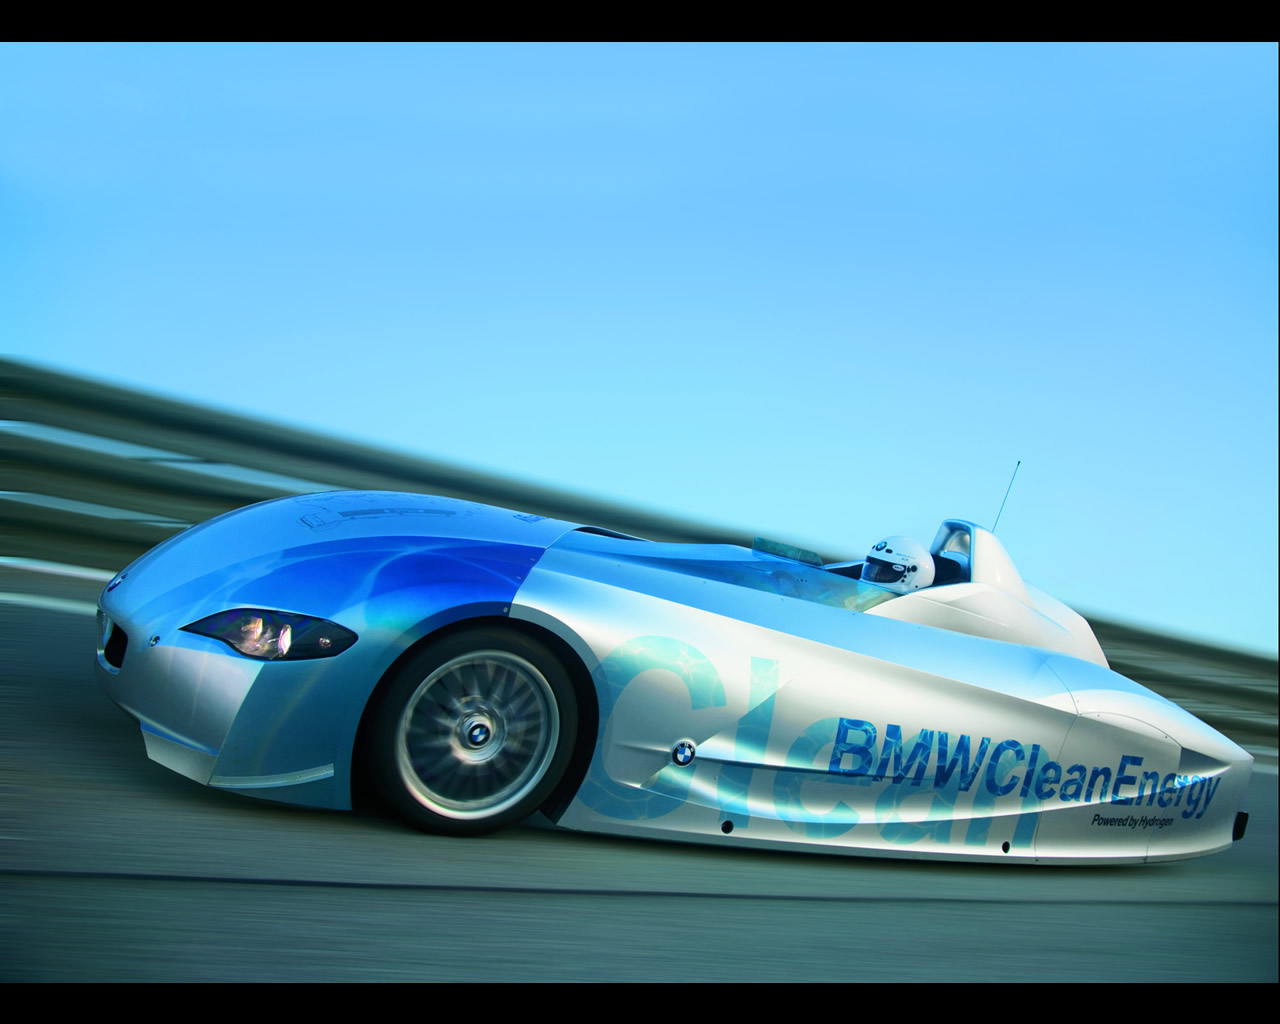 Bmw h2r hydrogen car #2